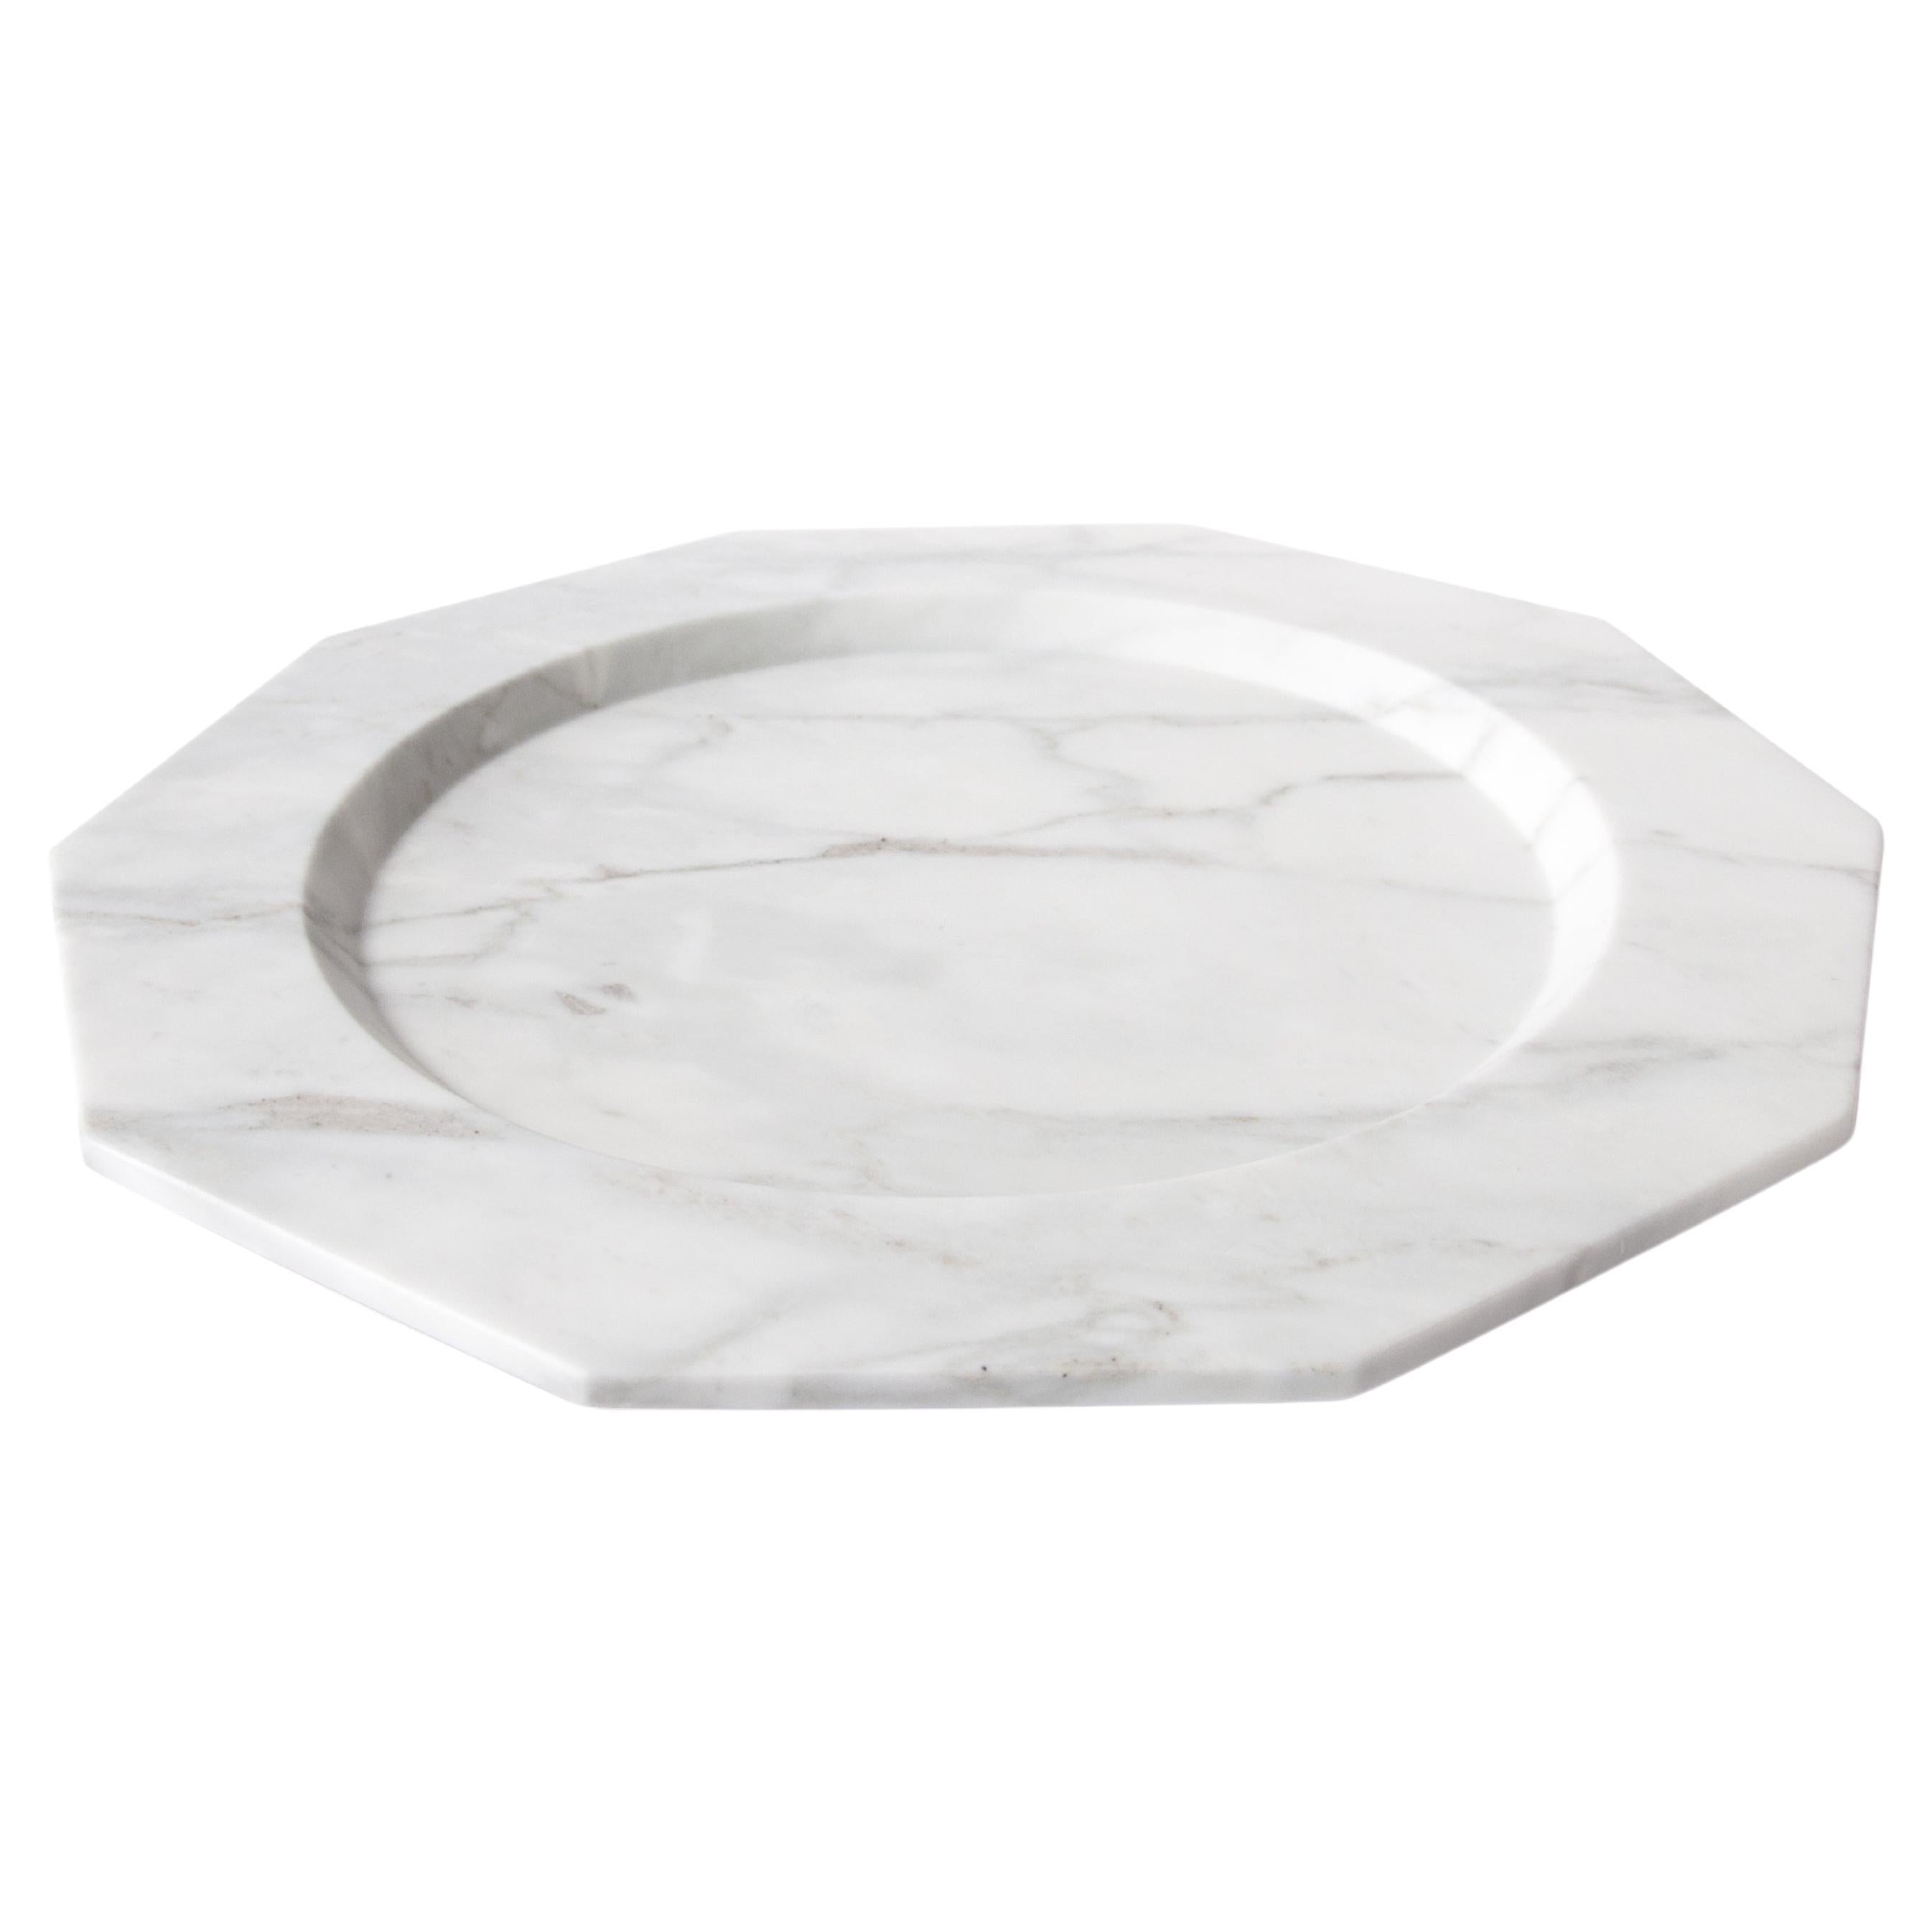 Grande assiette plate en marbre Arabescato satiné faite à la main